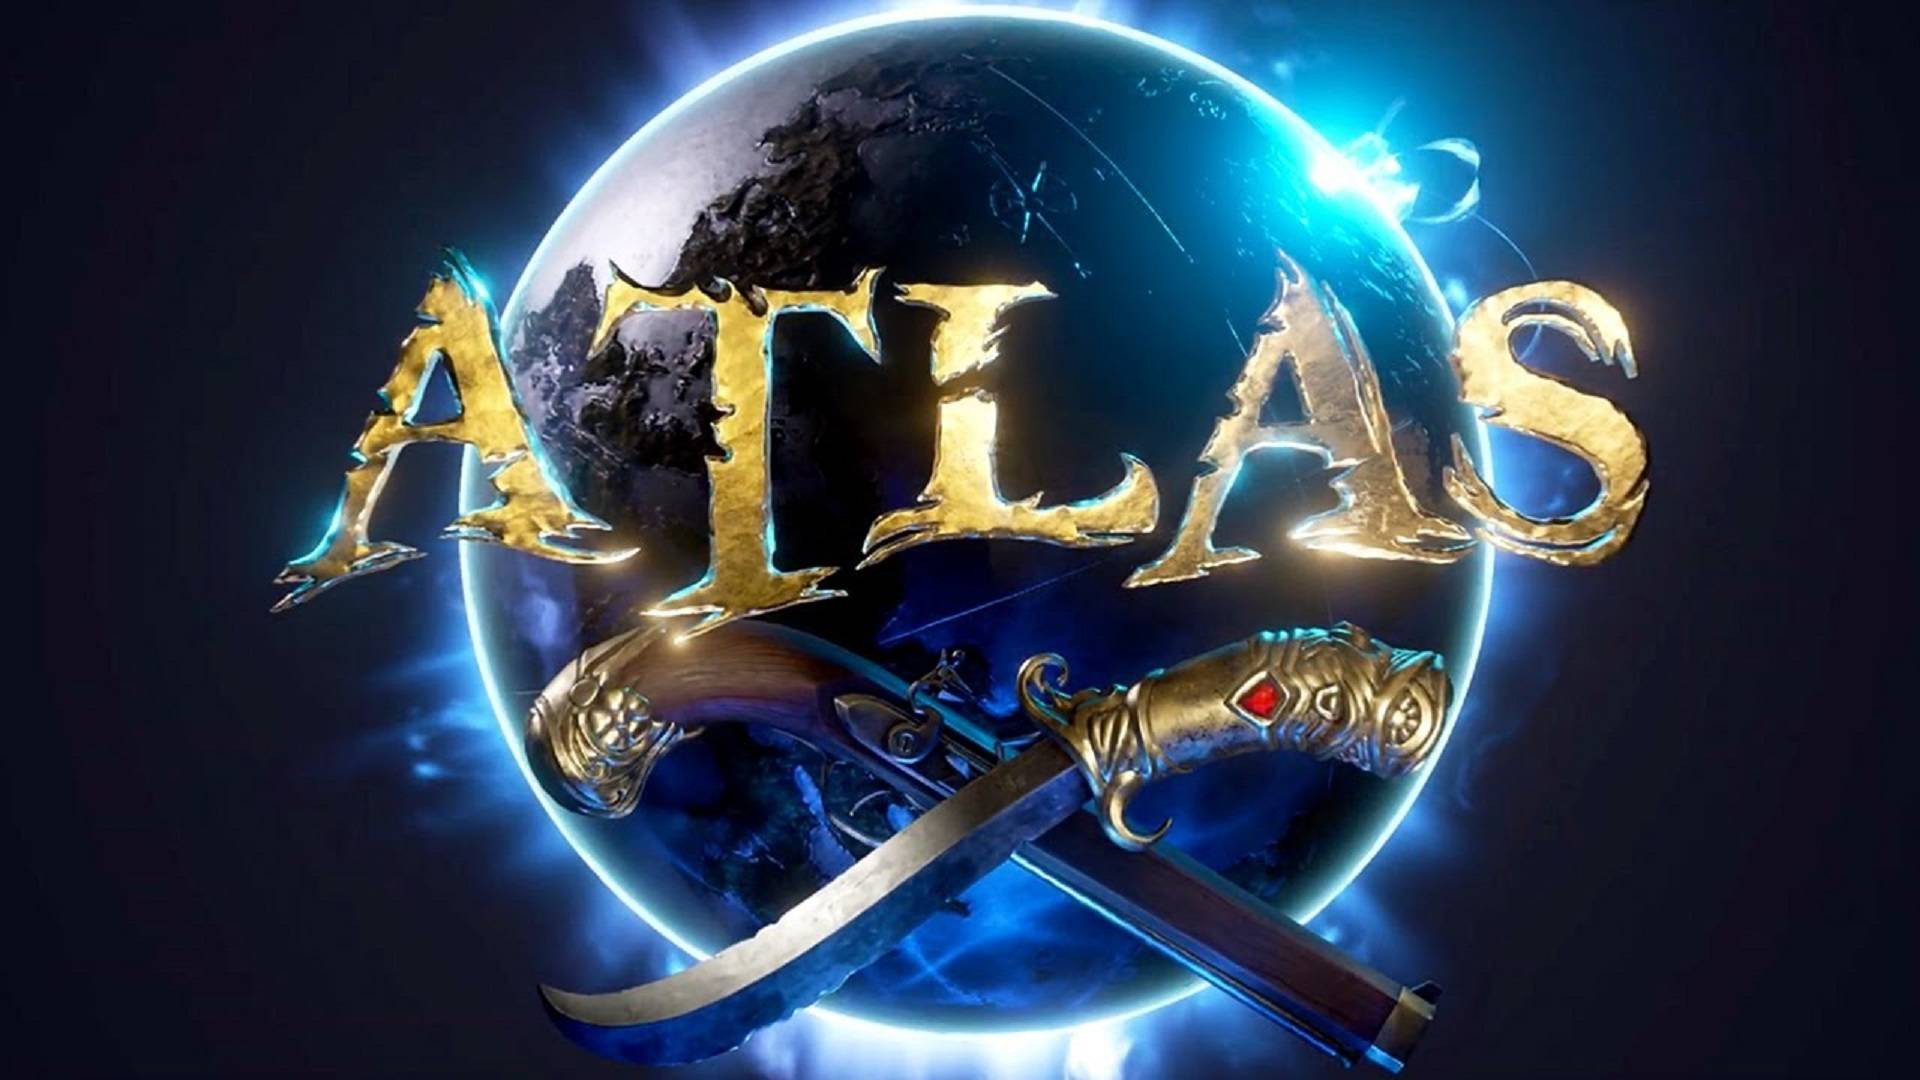 ☠ Atlas ☠ Начало. Одиночная игра,  пока не надоест #04